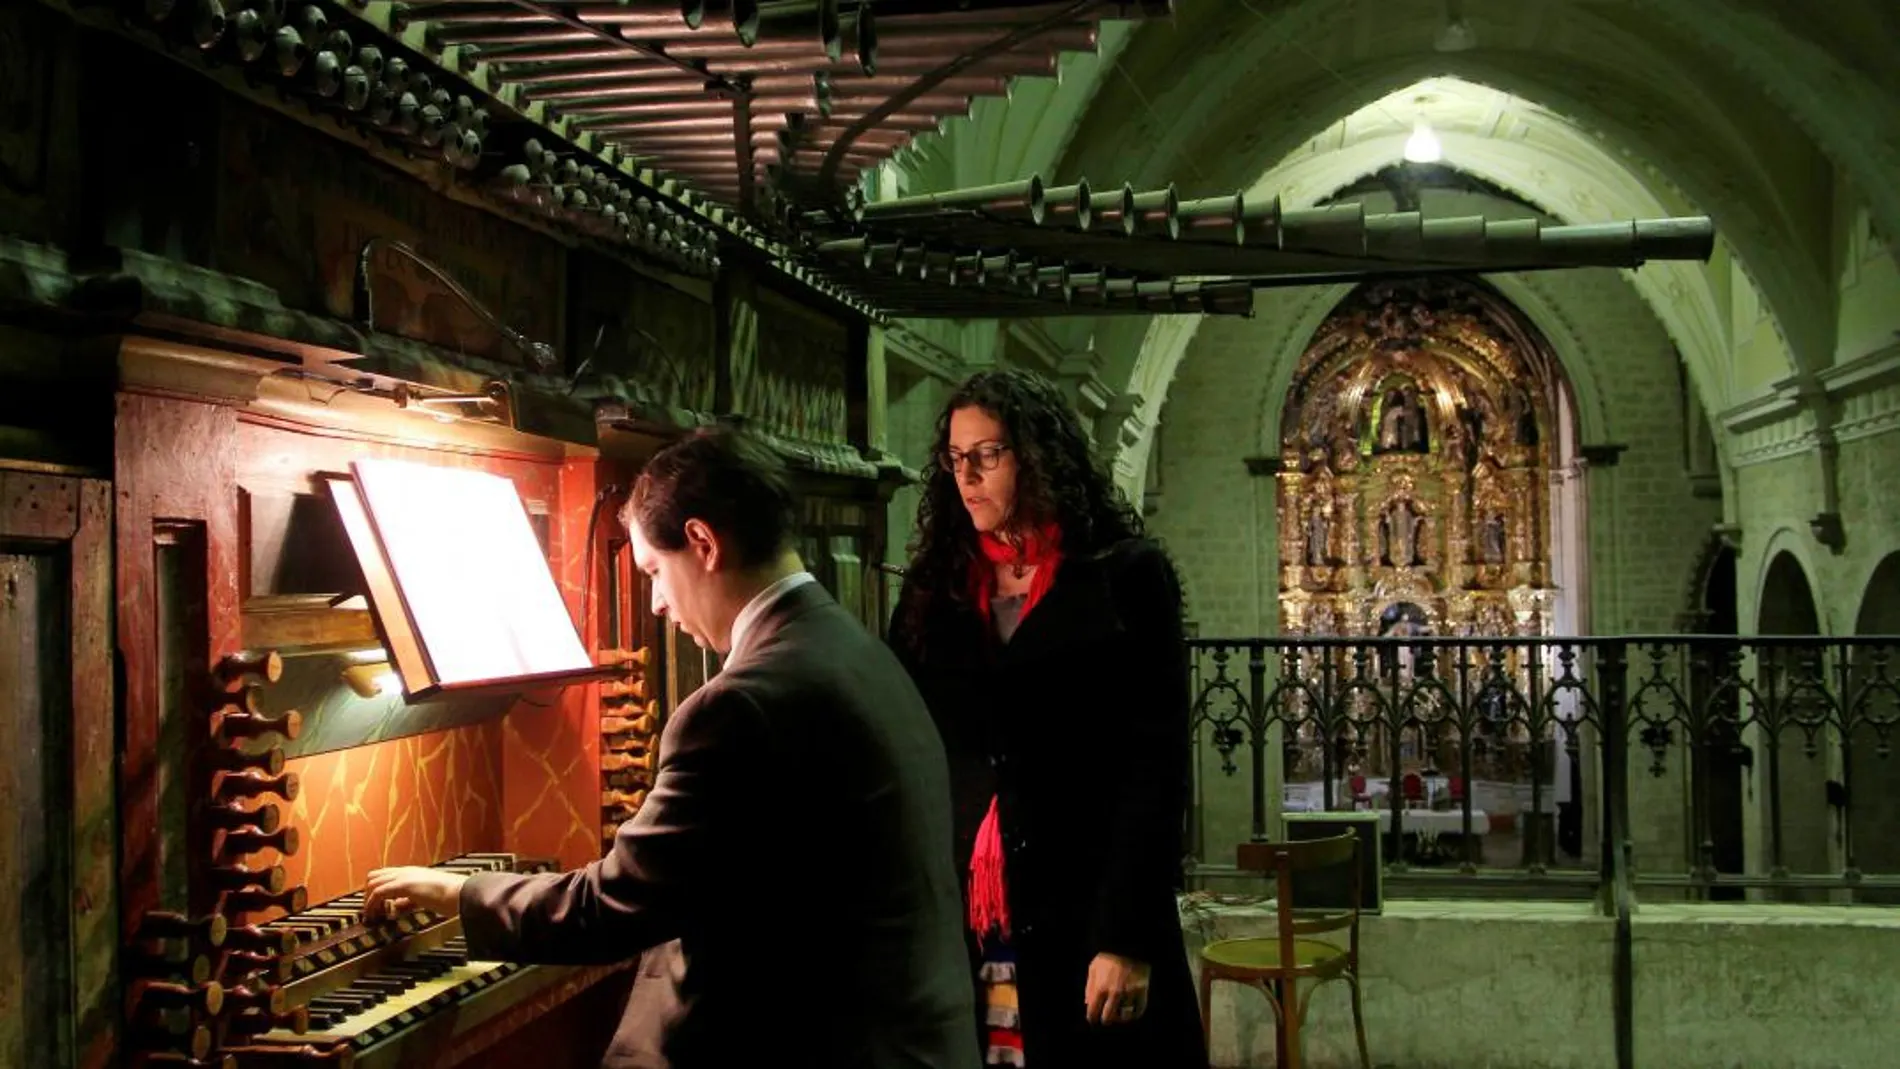 Los organistas Juan Luis Sáez y Ana Aguado se preparan para interpretar una pieza en el órgano de la iglesia de San Francisco de Palencia.